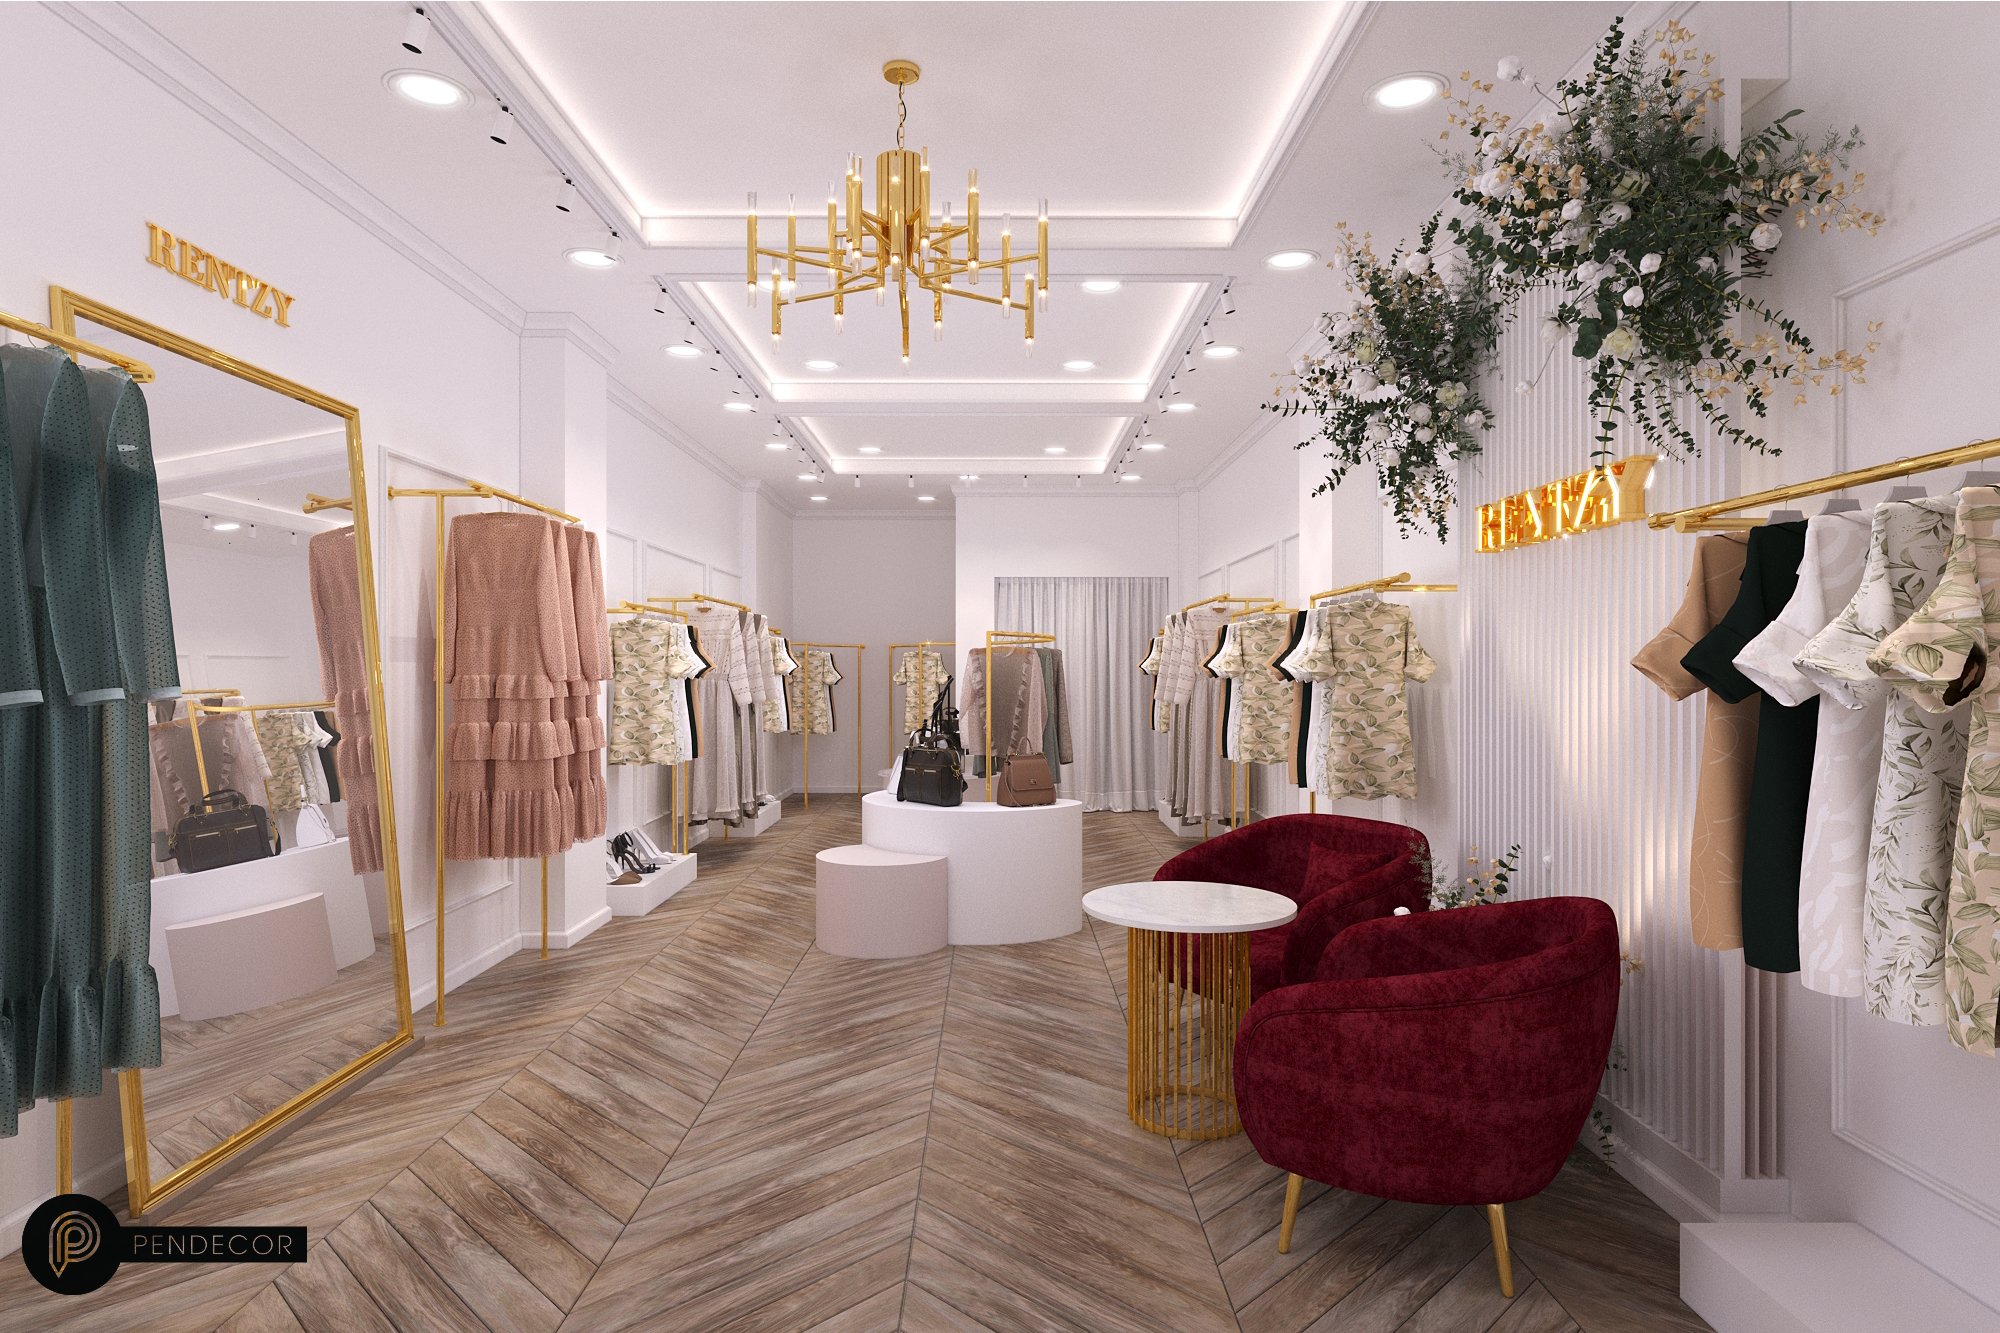 Thiết kế Shop Thời Trang Nữ Rentzy (5 tầng)